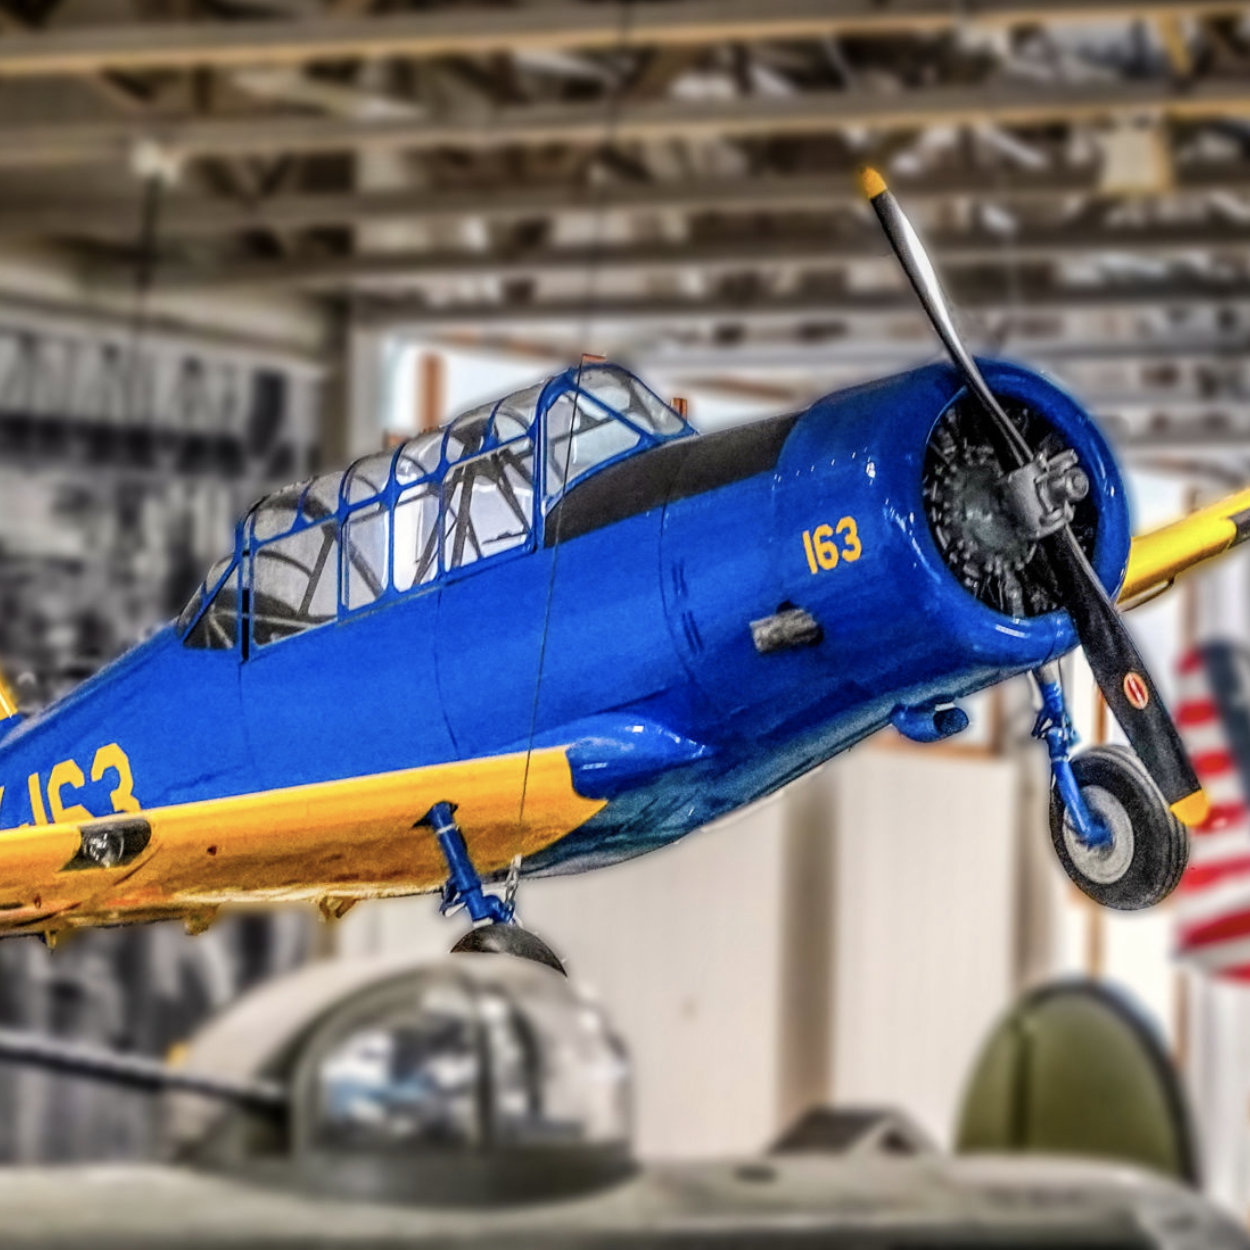 historic aircraft